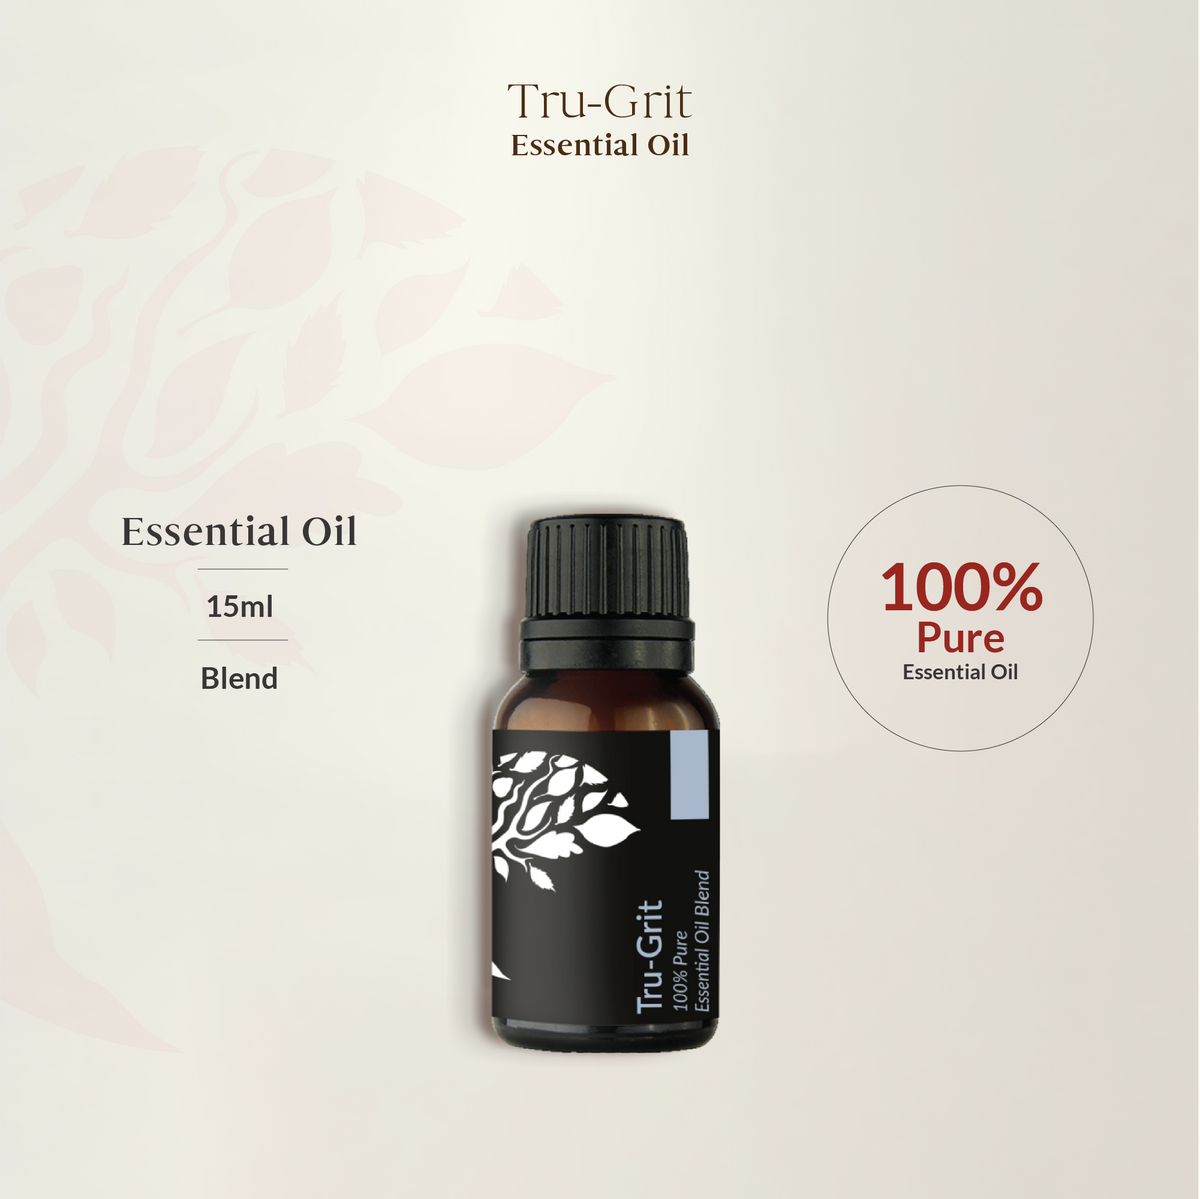 Tru-Grit Essential Oil Blend 15ml